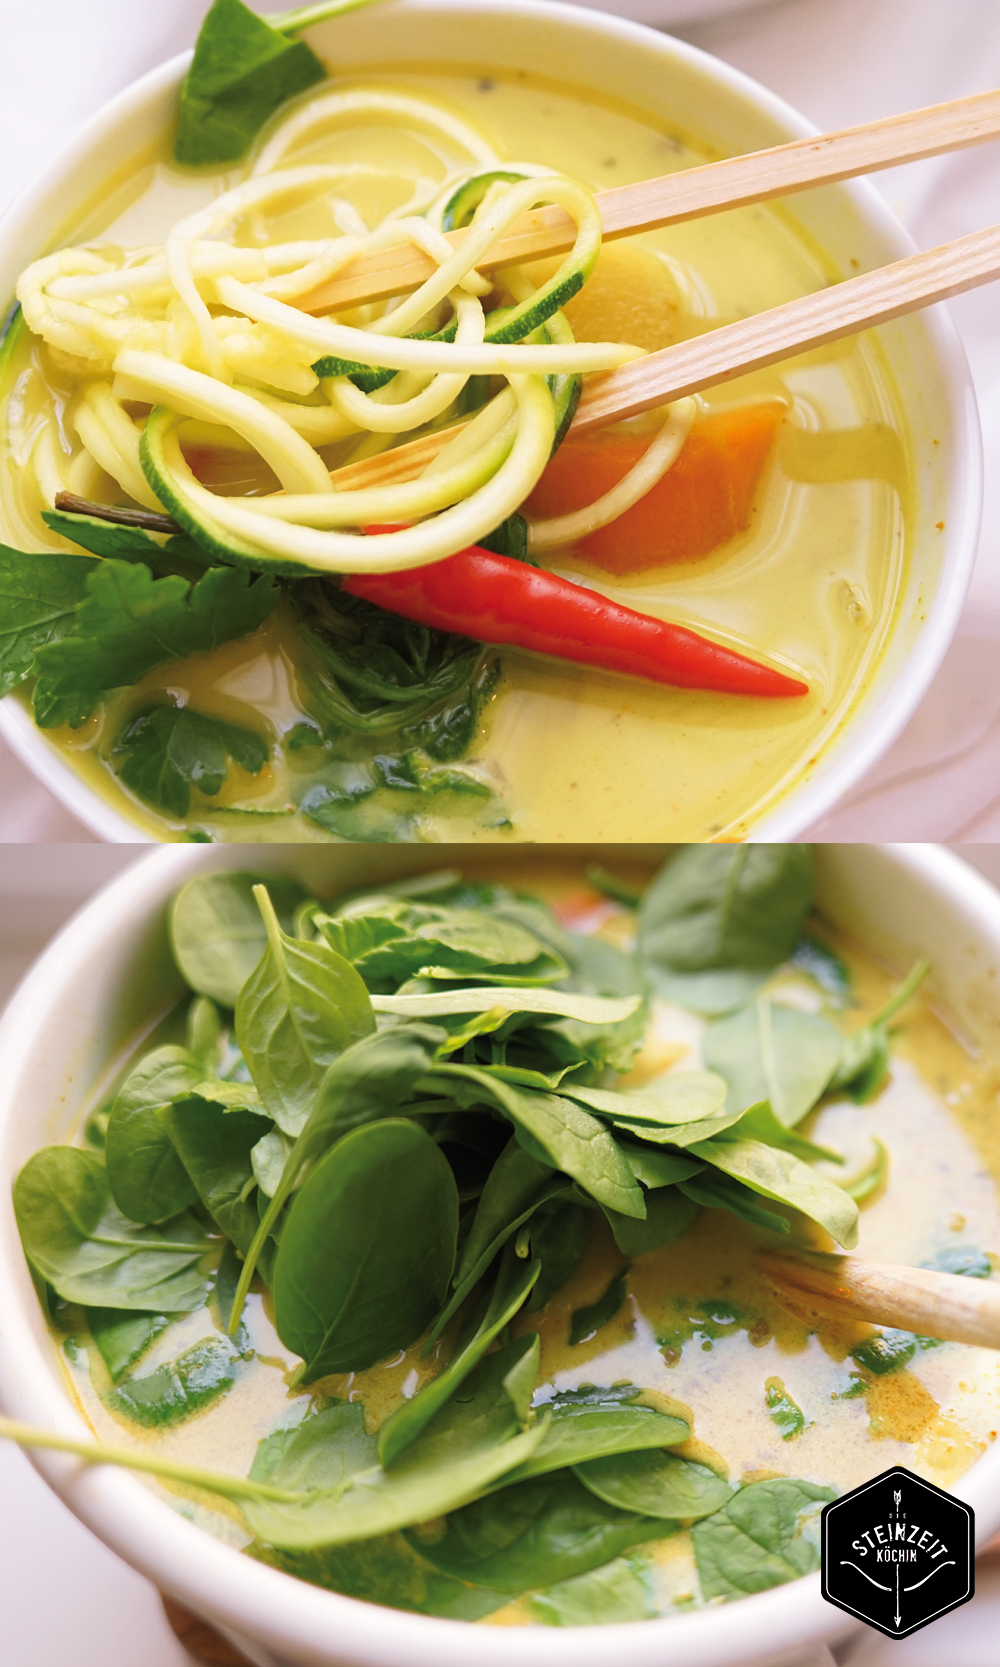 Thai Suppe, mit gelbem Curry und Zucchininudeln, zitronig frisch mit etwas Schärfe. Wenig kohlenhydrate, nur wenige Zutaten, ohne laktosefrei, Paleo, gesundes Rezept, schnell zubereitet, gesundes Mittagessen, Abendessen mit wenigen Kalorien